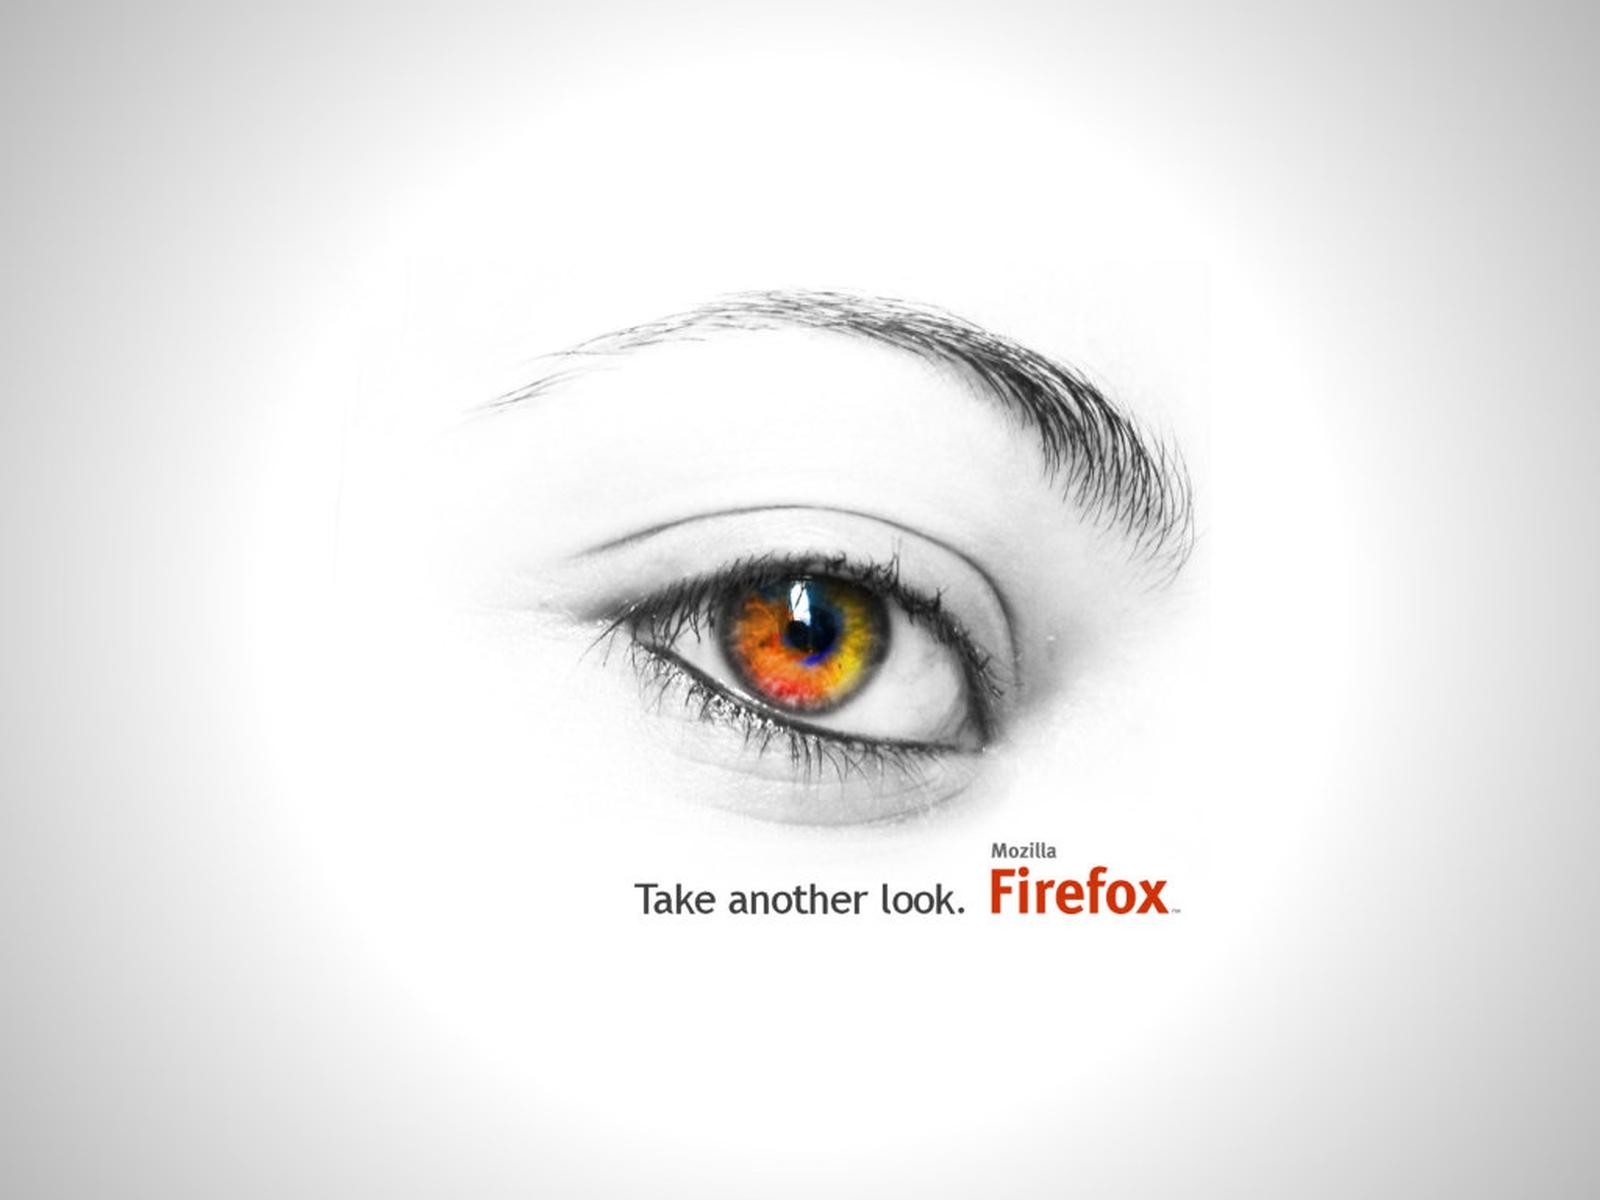 Скачать картинку Fire Fox, Технологии в телефон бесплатно.